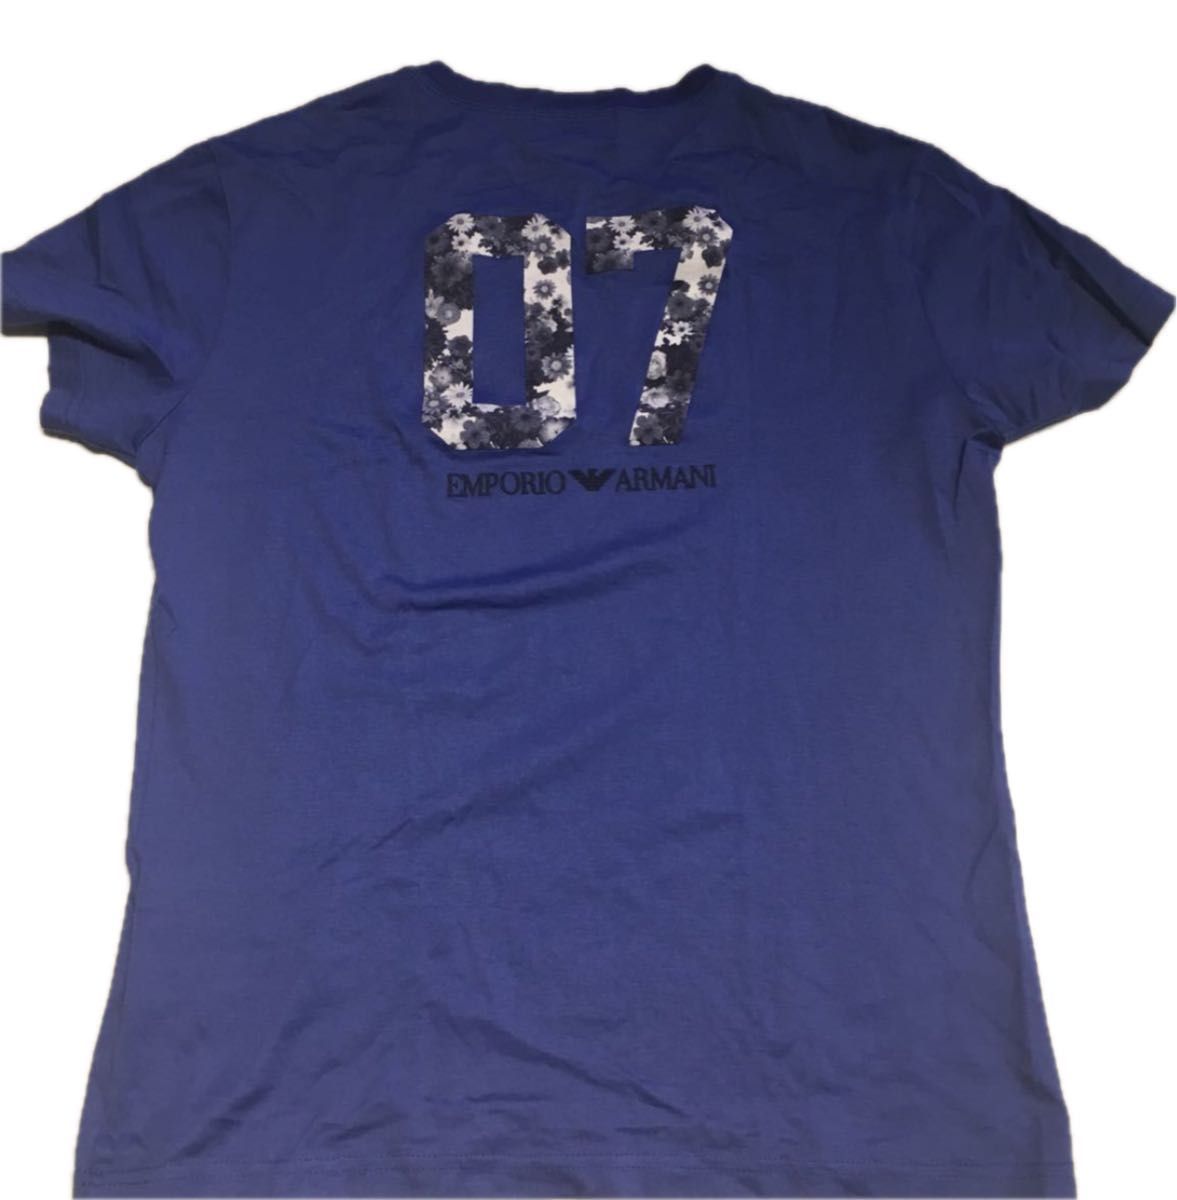 2.5万円 エンポリオアルマーニ メンズ 半袖 Tシャツ 44 Sサイズ 07 花柄 EA GA アルマーニ Tシャツ トップス